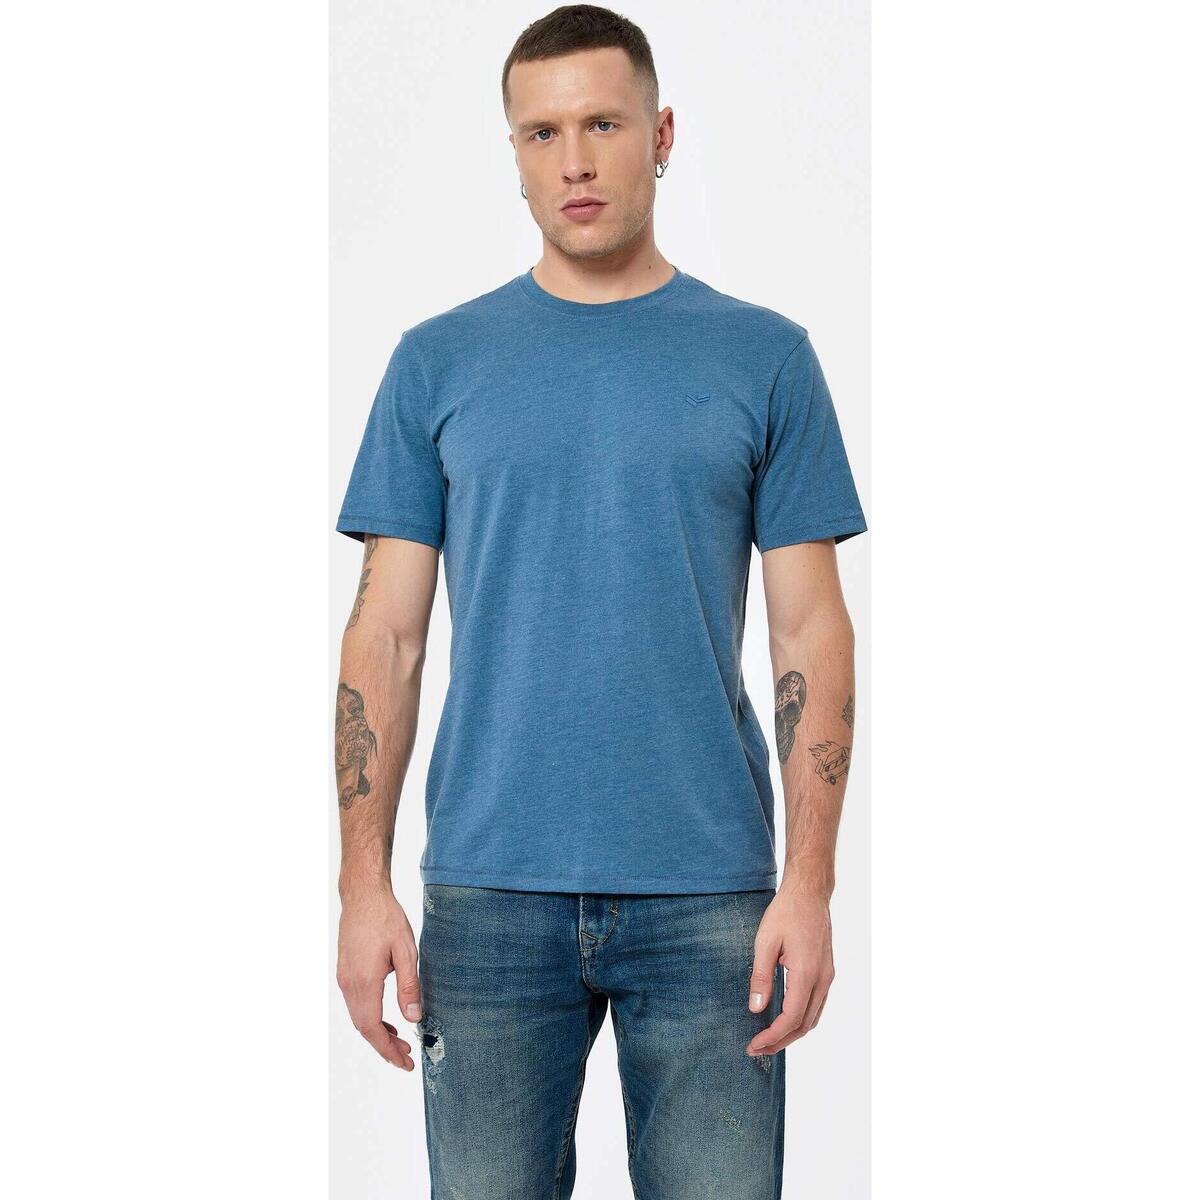 Vêtements Homme T-shirts manches courtes Kaporal PACCO Bleu